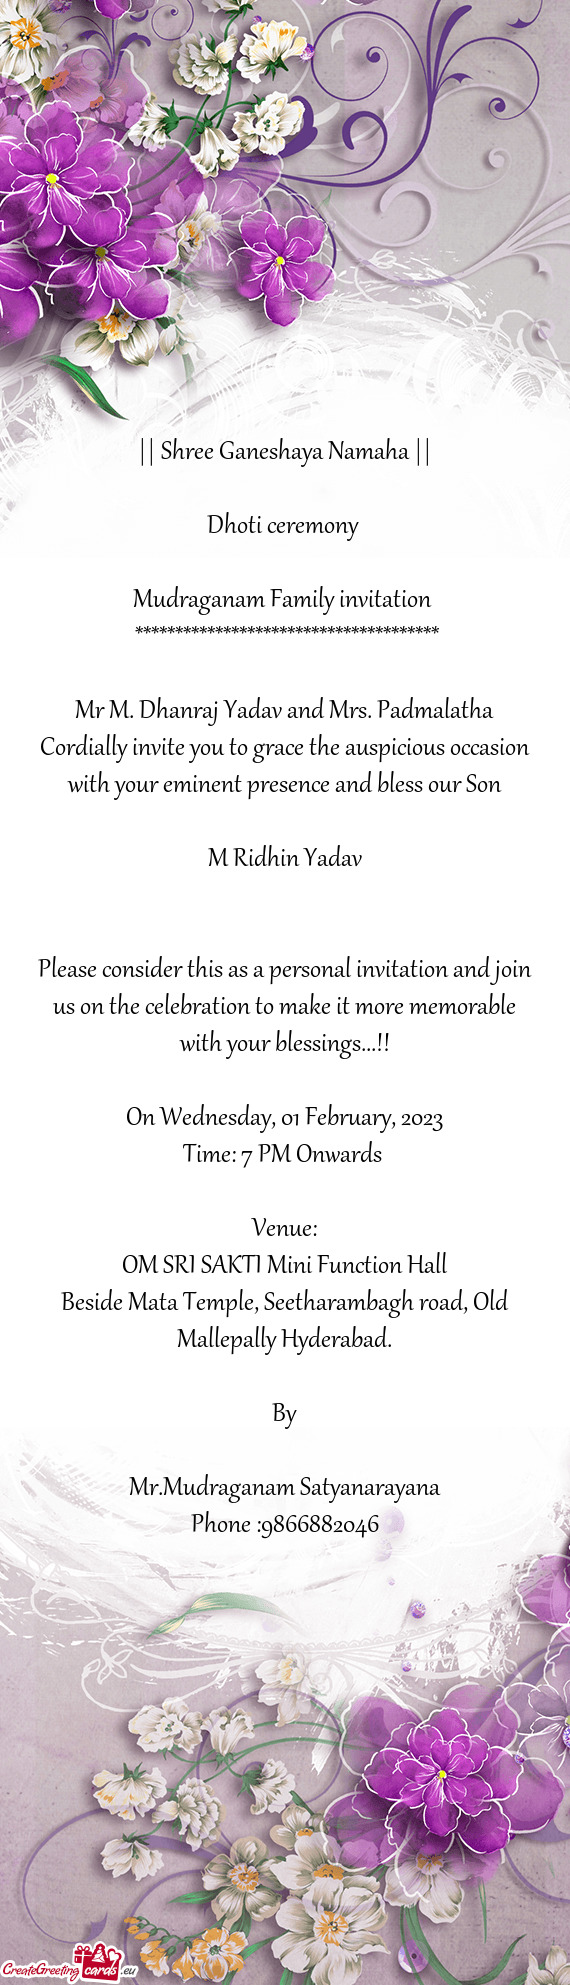 Mudraganam Family invitation